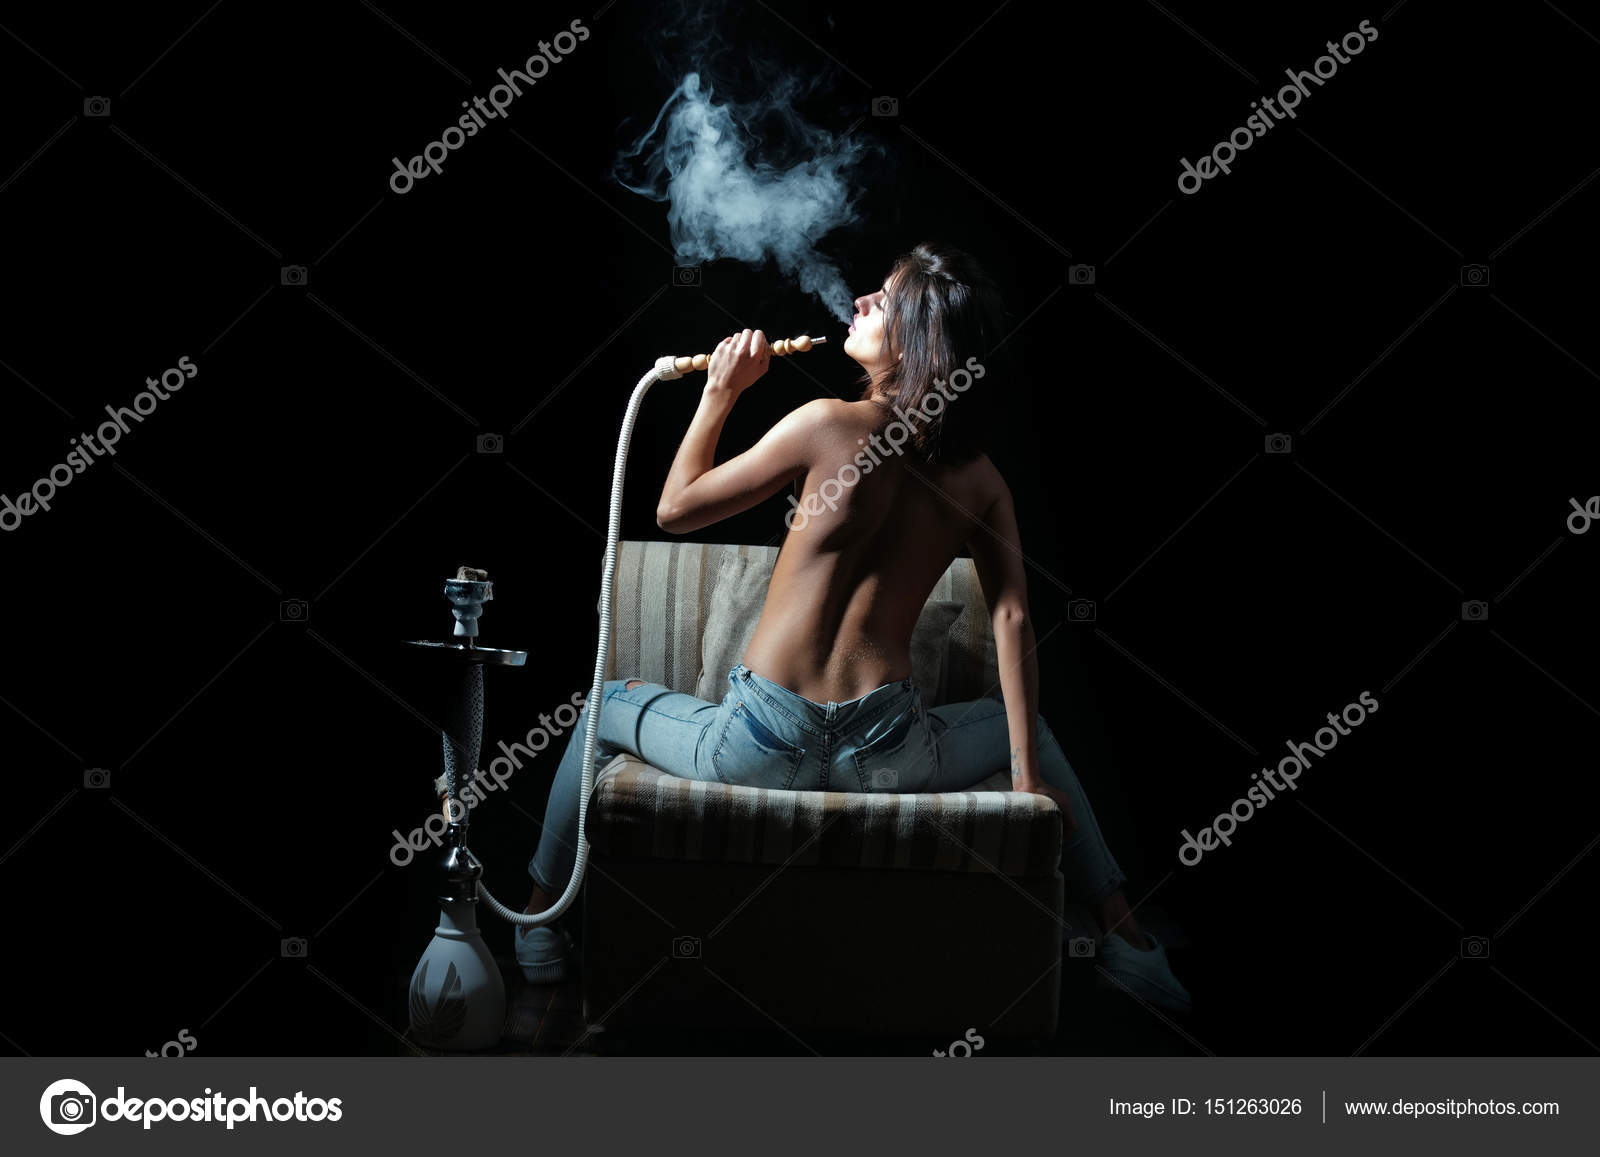 Naked women smoking cigarettes